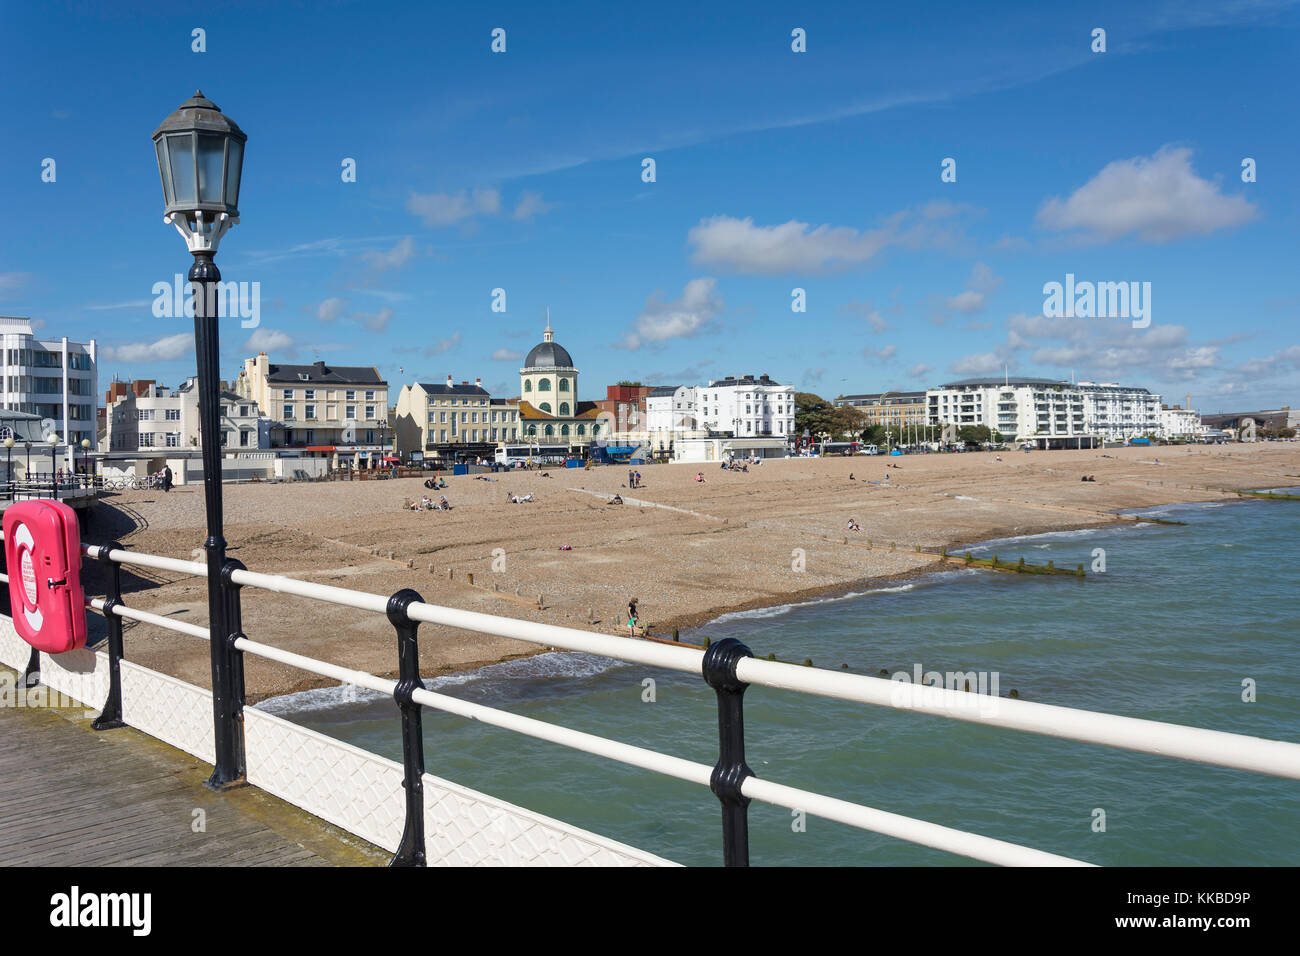 La spiaggia e il lungomare da Worthing Pier, Worthing, West Sussex, in Inghilterra, Regno Unito Foto Stock